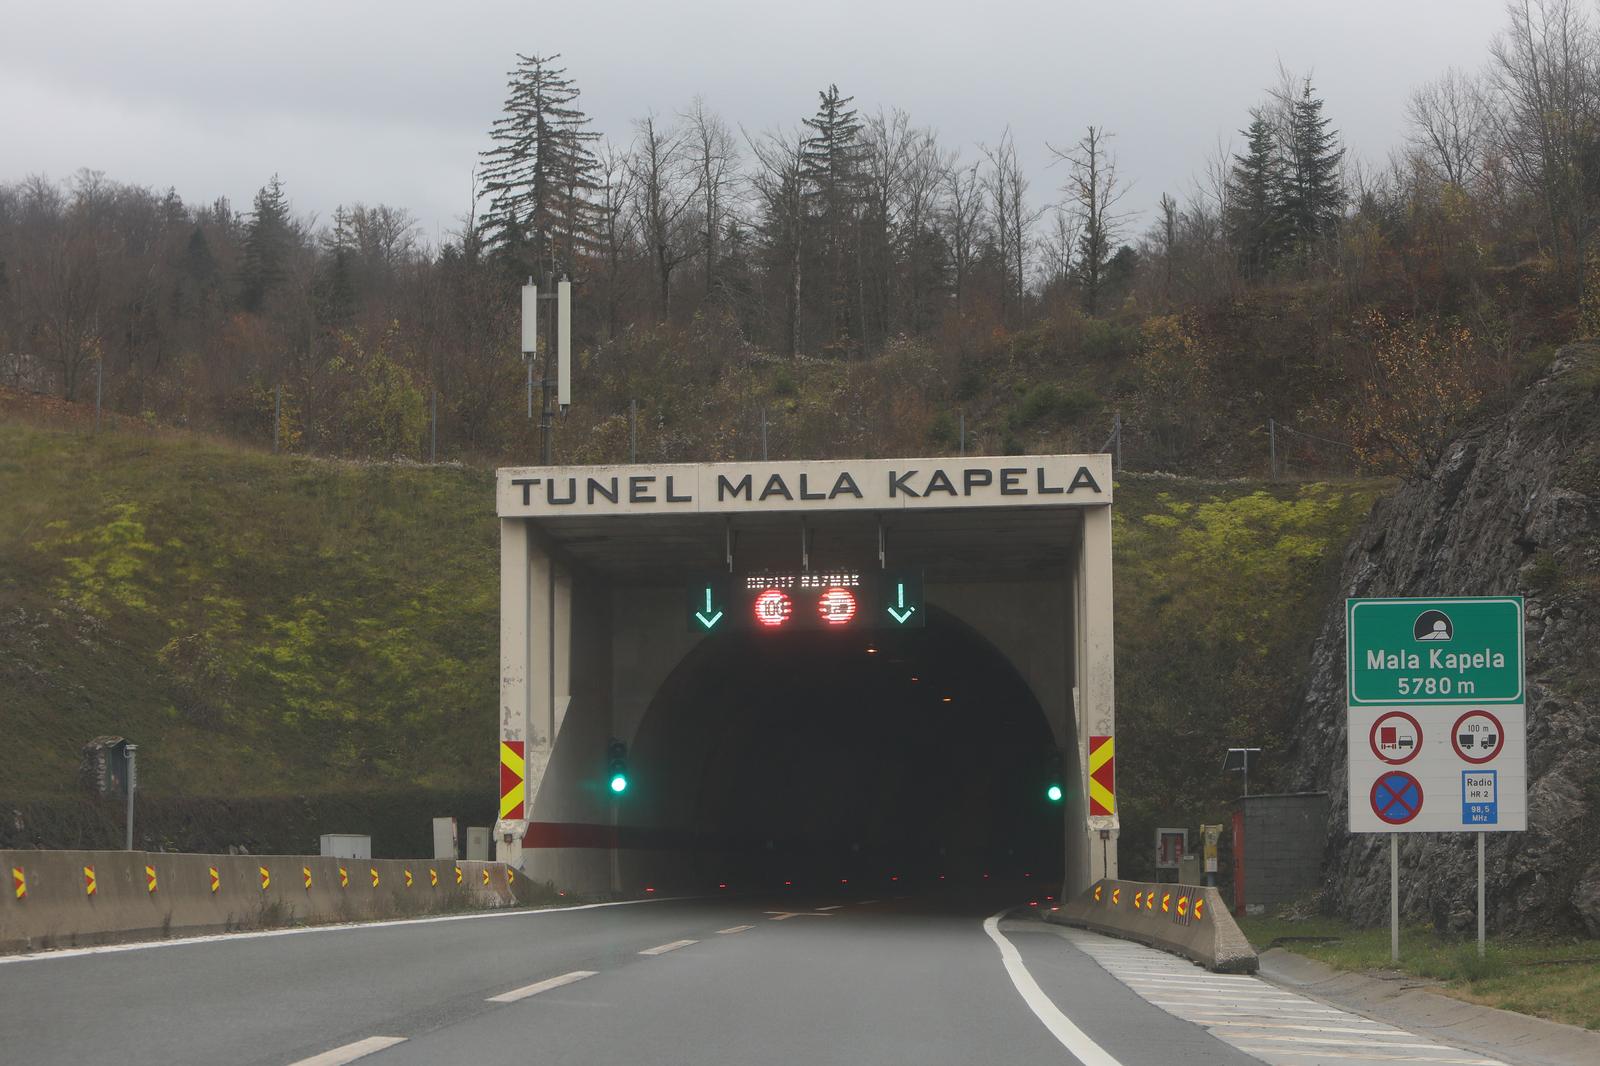 16.11.2022., gulin - Tunel Mala Kapela na autocesti A1. Nalazi se u predjelu izmedu sela Jezerane i Modrus izmedu izlaza za Ogulin i za Brinje na autocesti A1 Photo: Kristina Stedul Fabac/PIXSELL